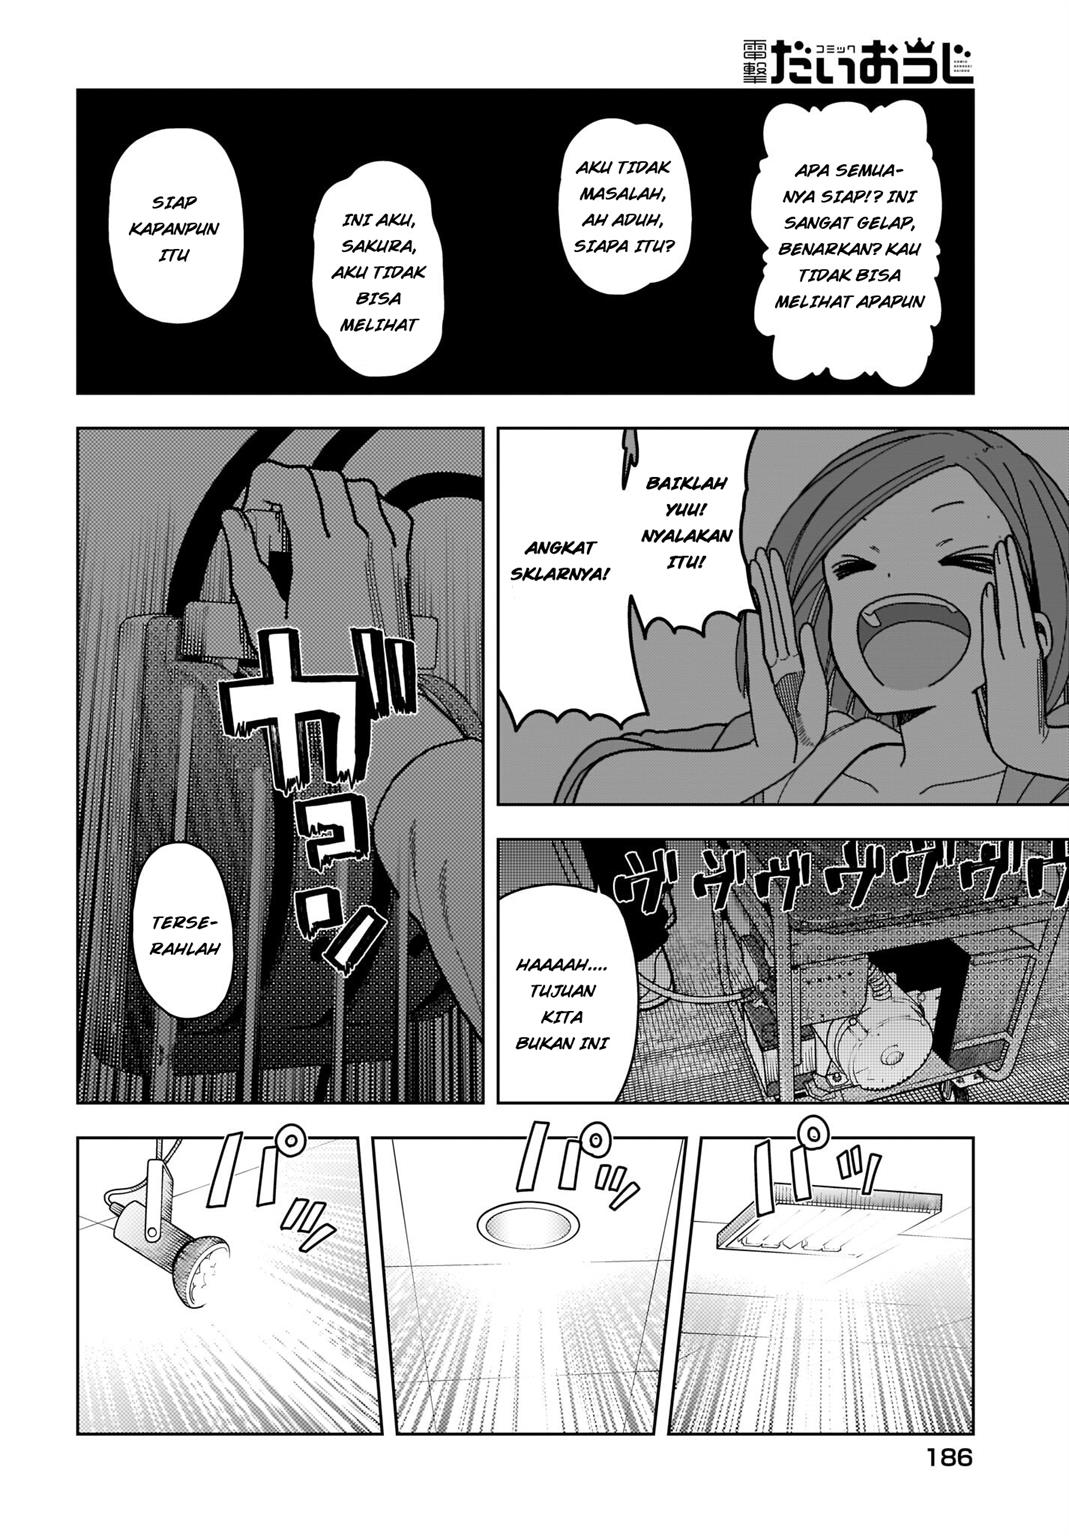 #Zombie Sagashitemasu Chapter 4